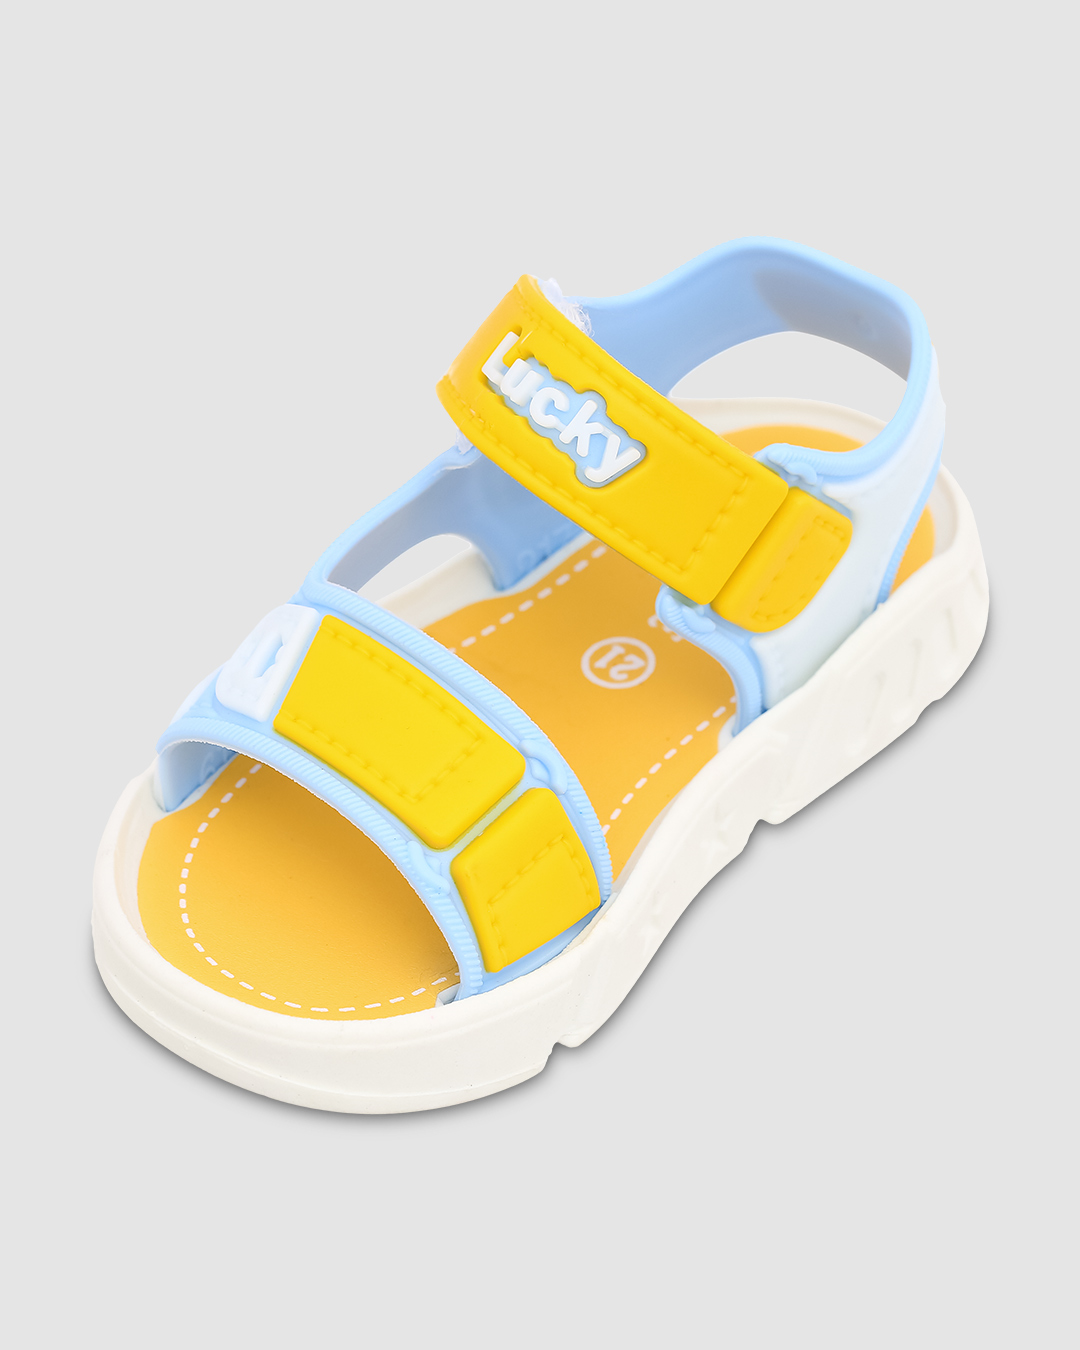 Giày sandal Á Châu Avakids AC34 màu xanh dương - vàng